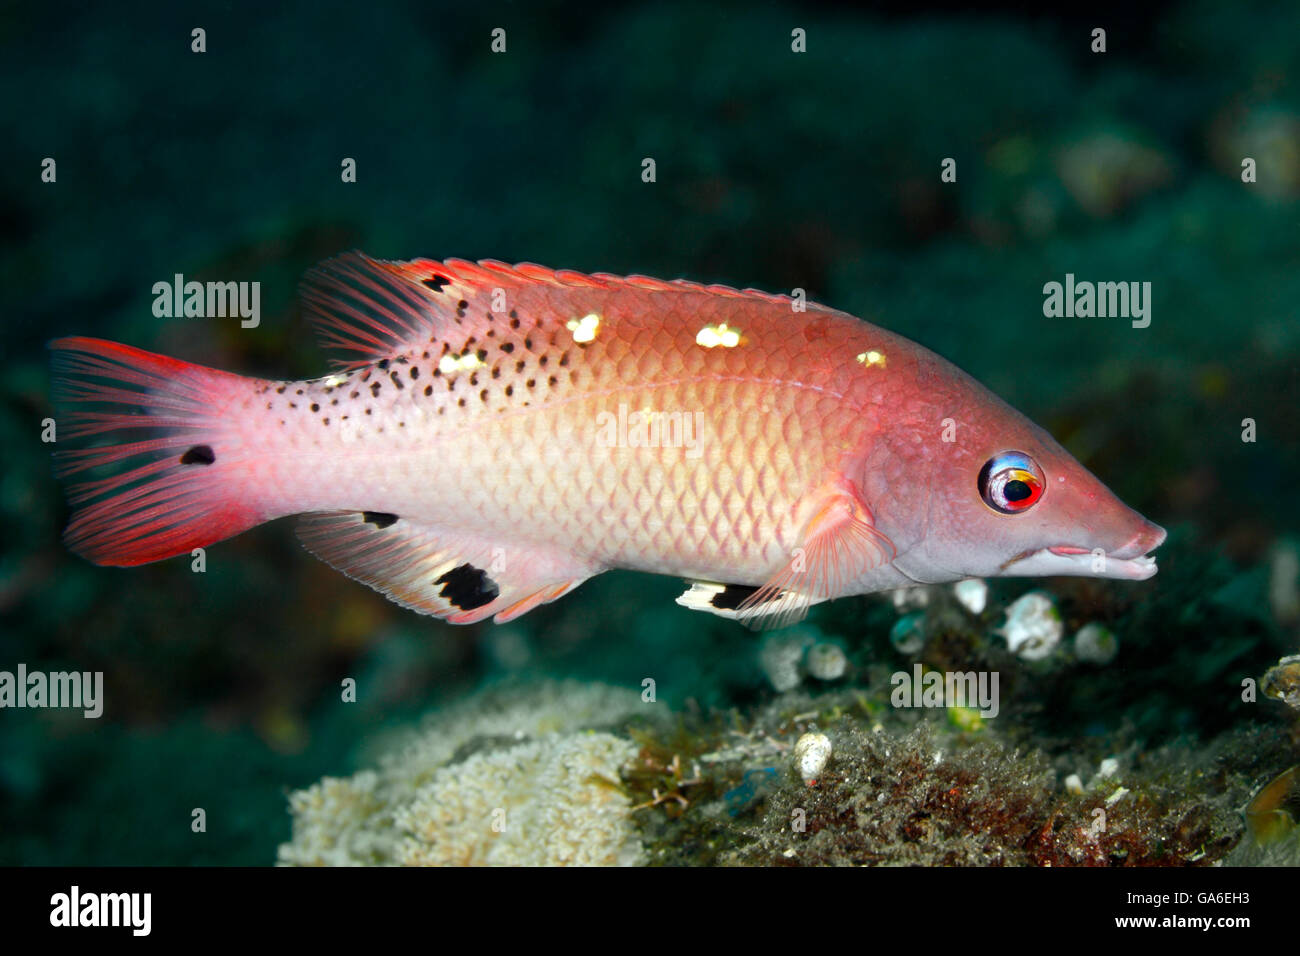 Dianas Lippfische, auch bekannt als Dianas Pigfish, Bodianus Diana. Tulamben, Bali, Indonesien. Bali Meer, Indischer Ozean Stockfoto